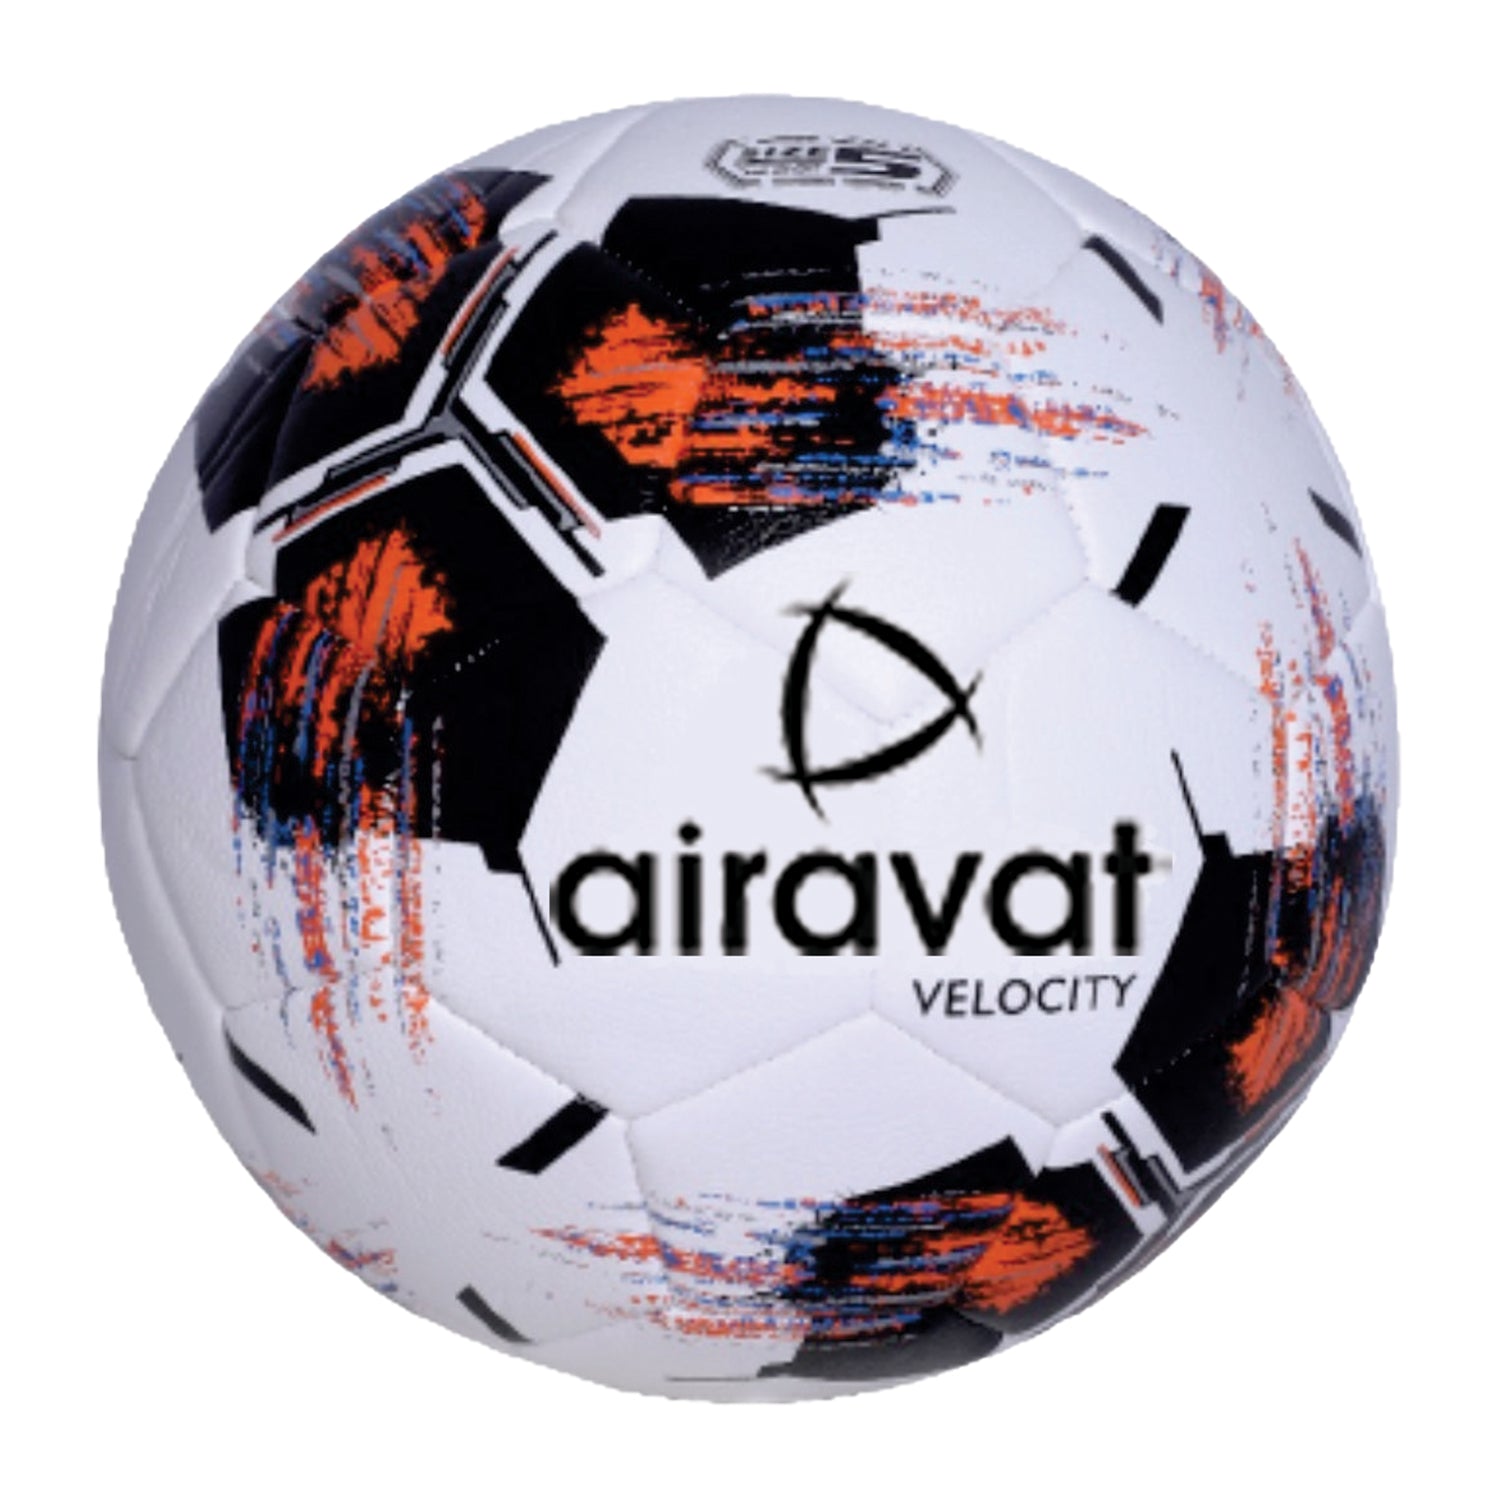 Velocity-foot-ball-main-image-orange